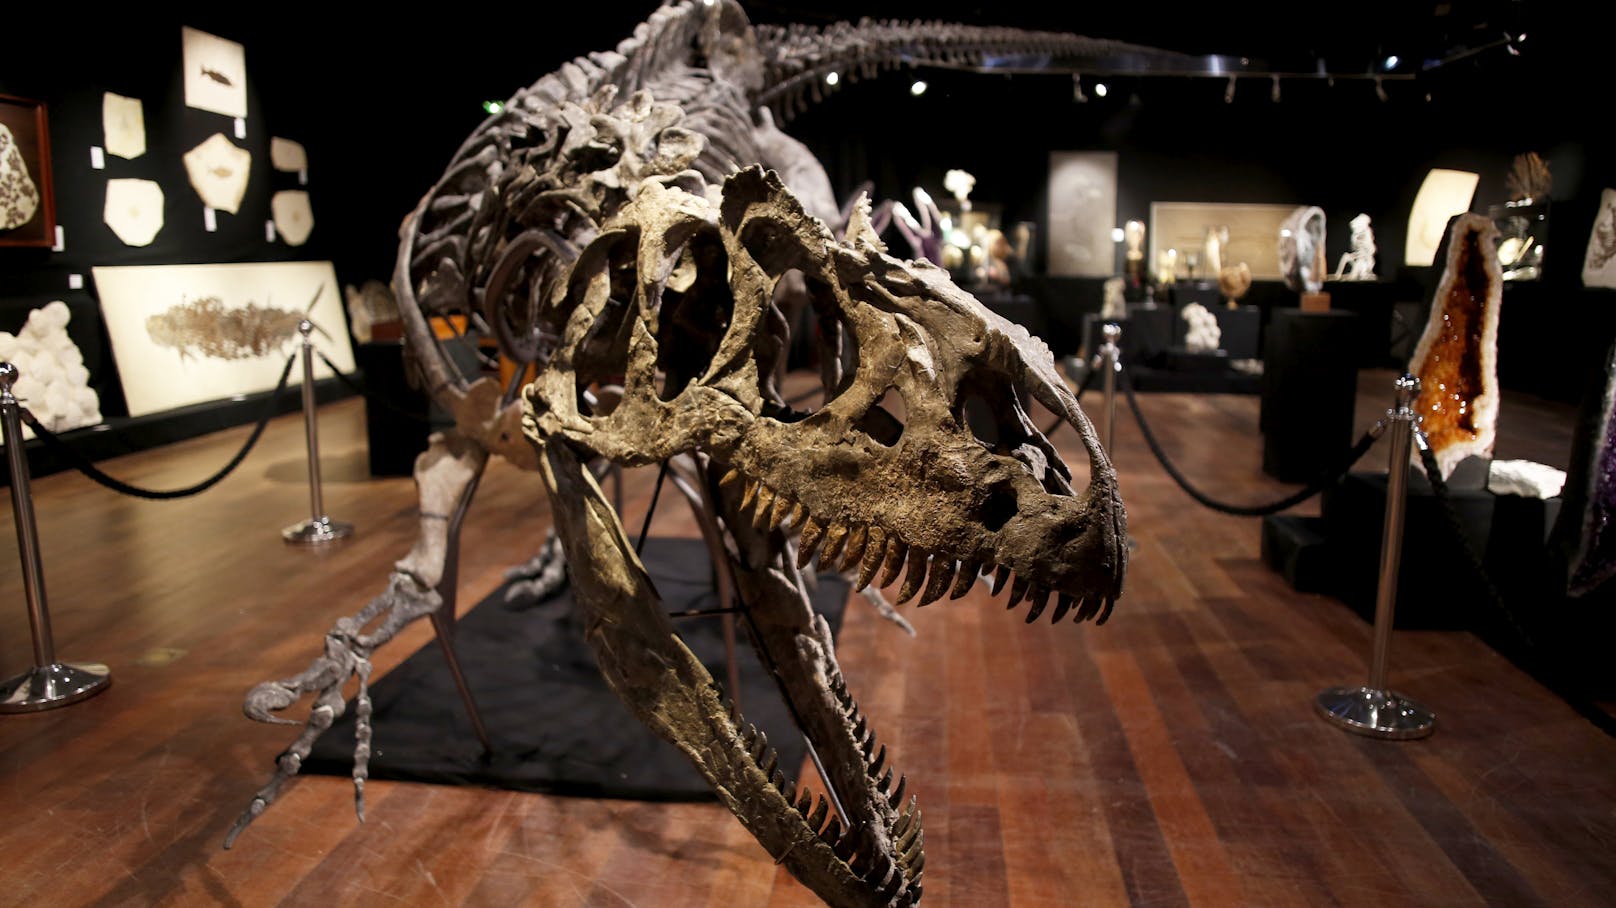 150 Millionen Jahre alt, 10 Meter lang, fast 4 Meter hoch - und über 3 Millionen Euro teuer